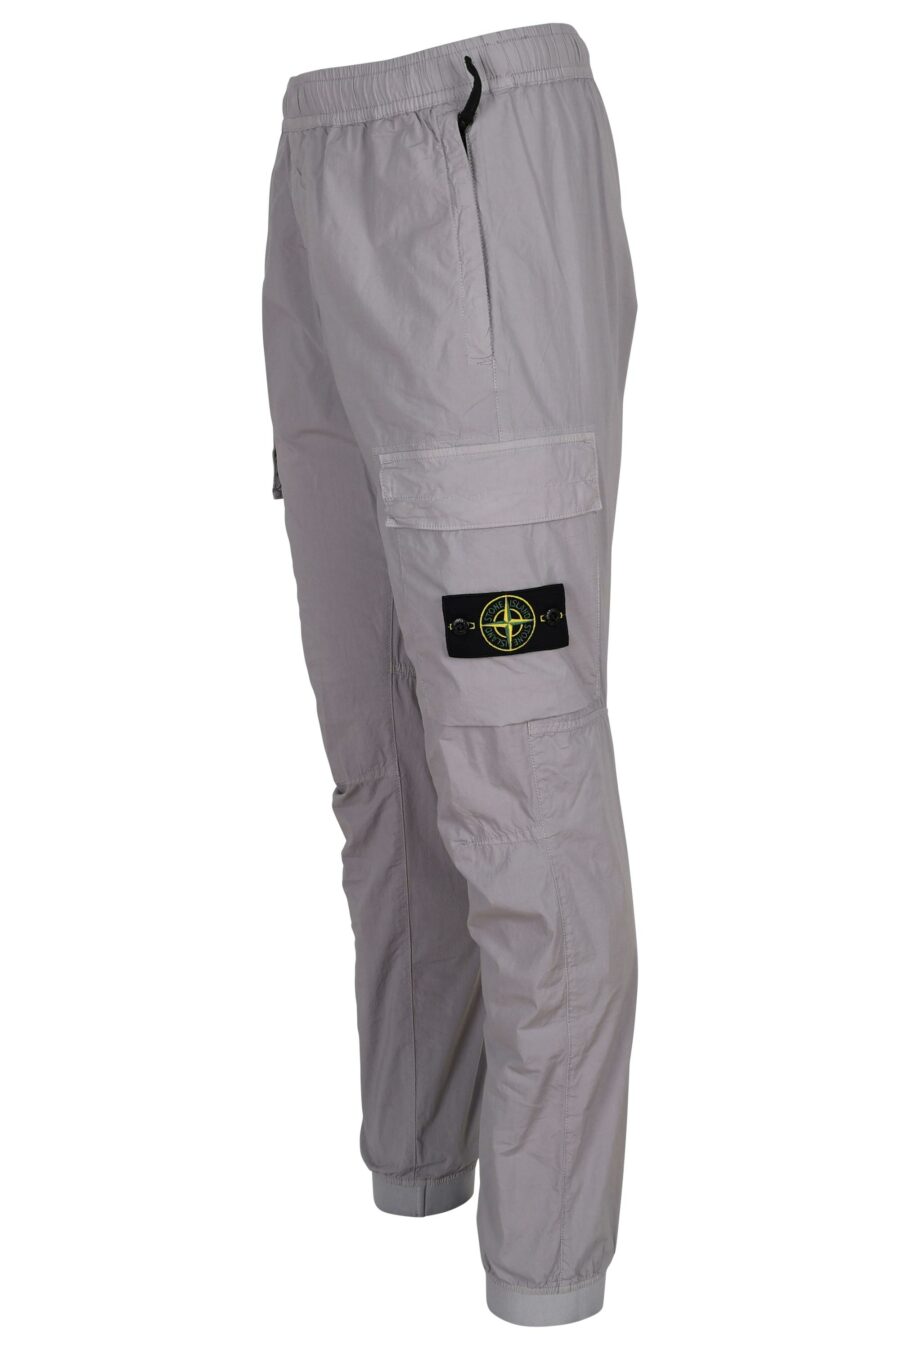 Pantalon fuselé gris lilas avec logo boussole - 8052572926846 2